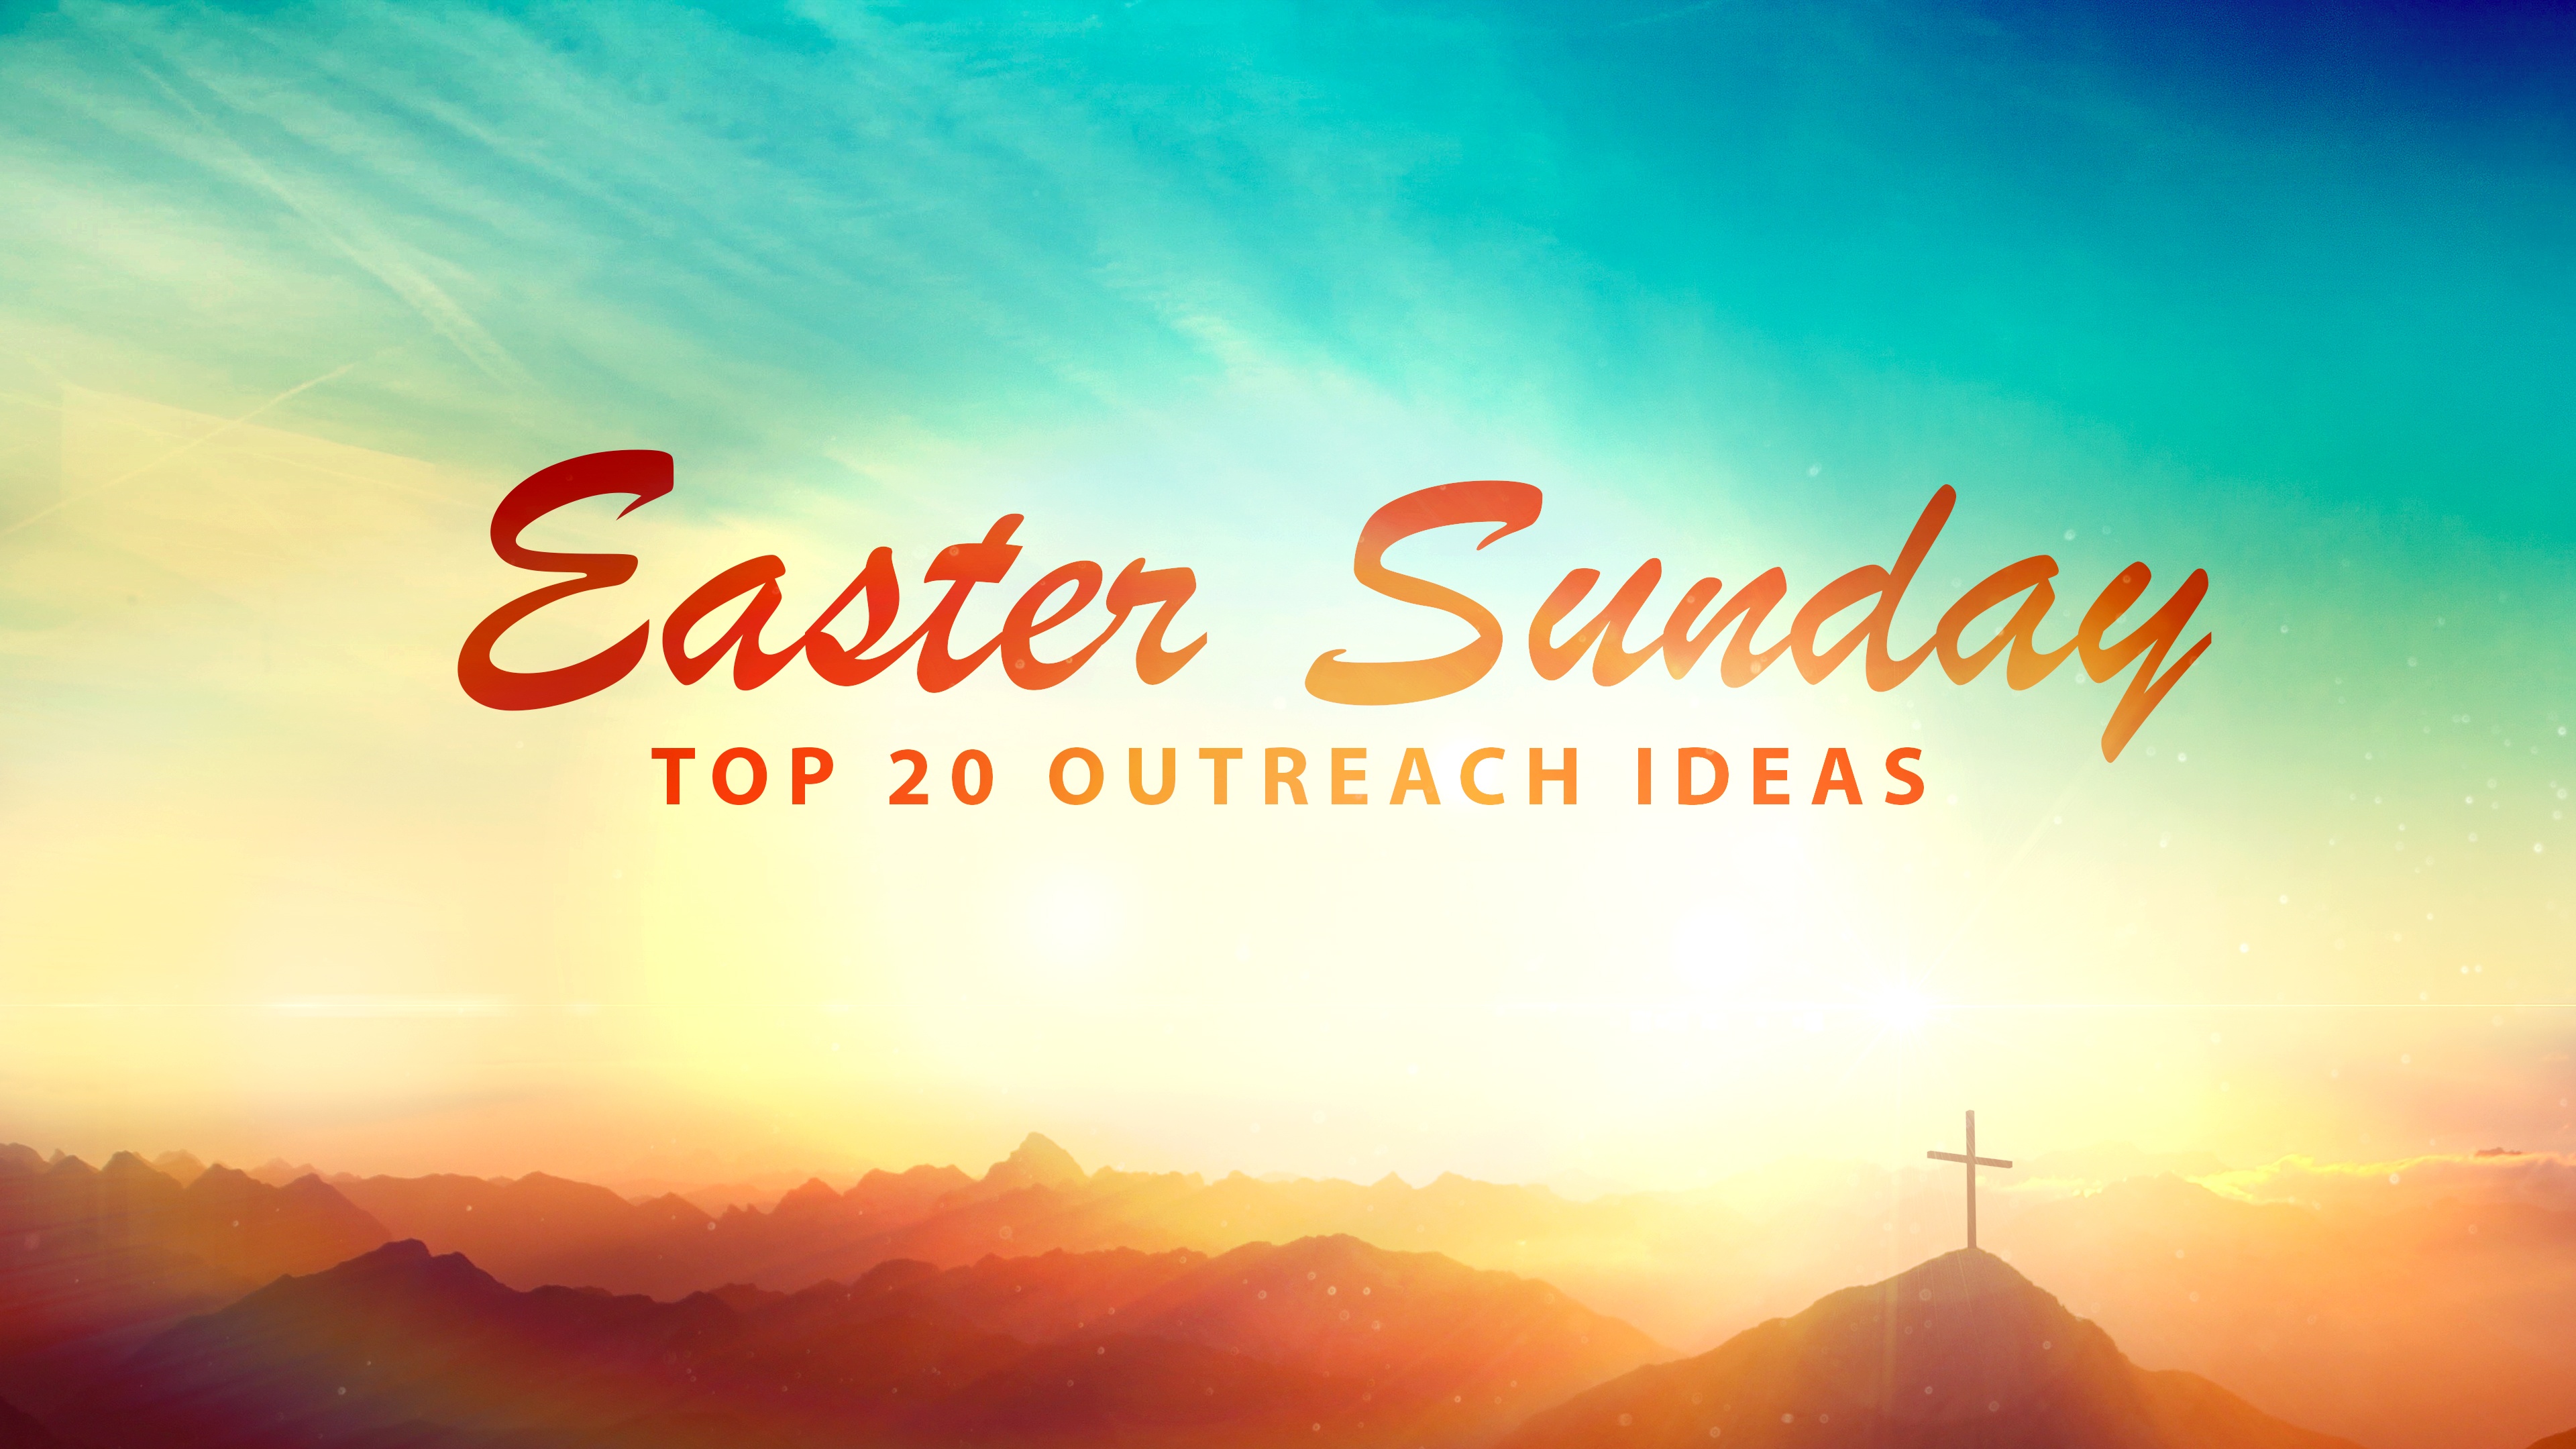 Top 20 Church Outreach Ideas for Easter Sunday ...